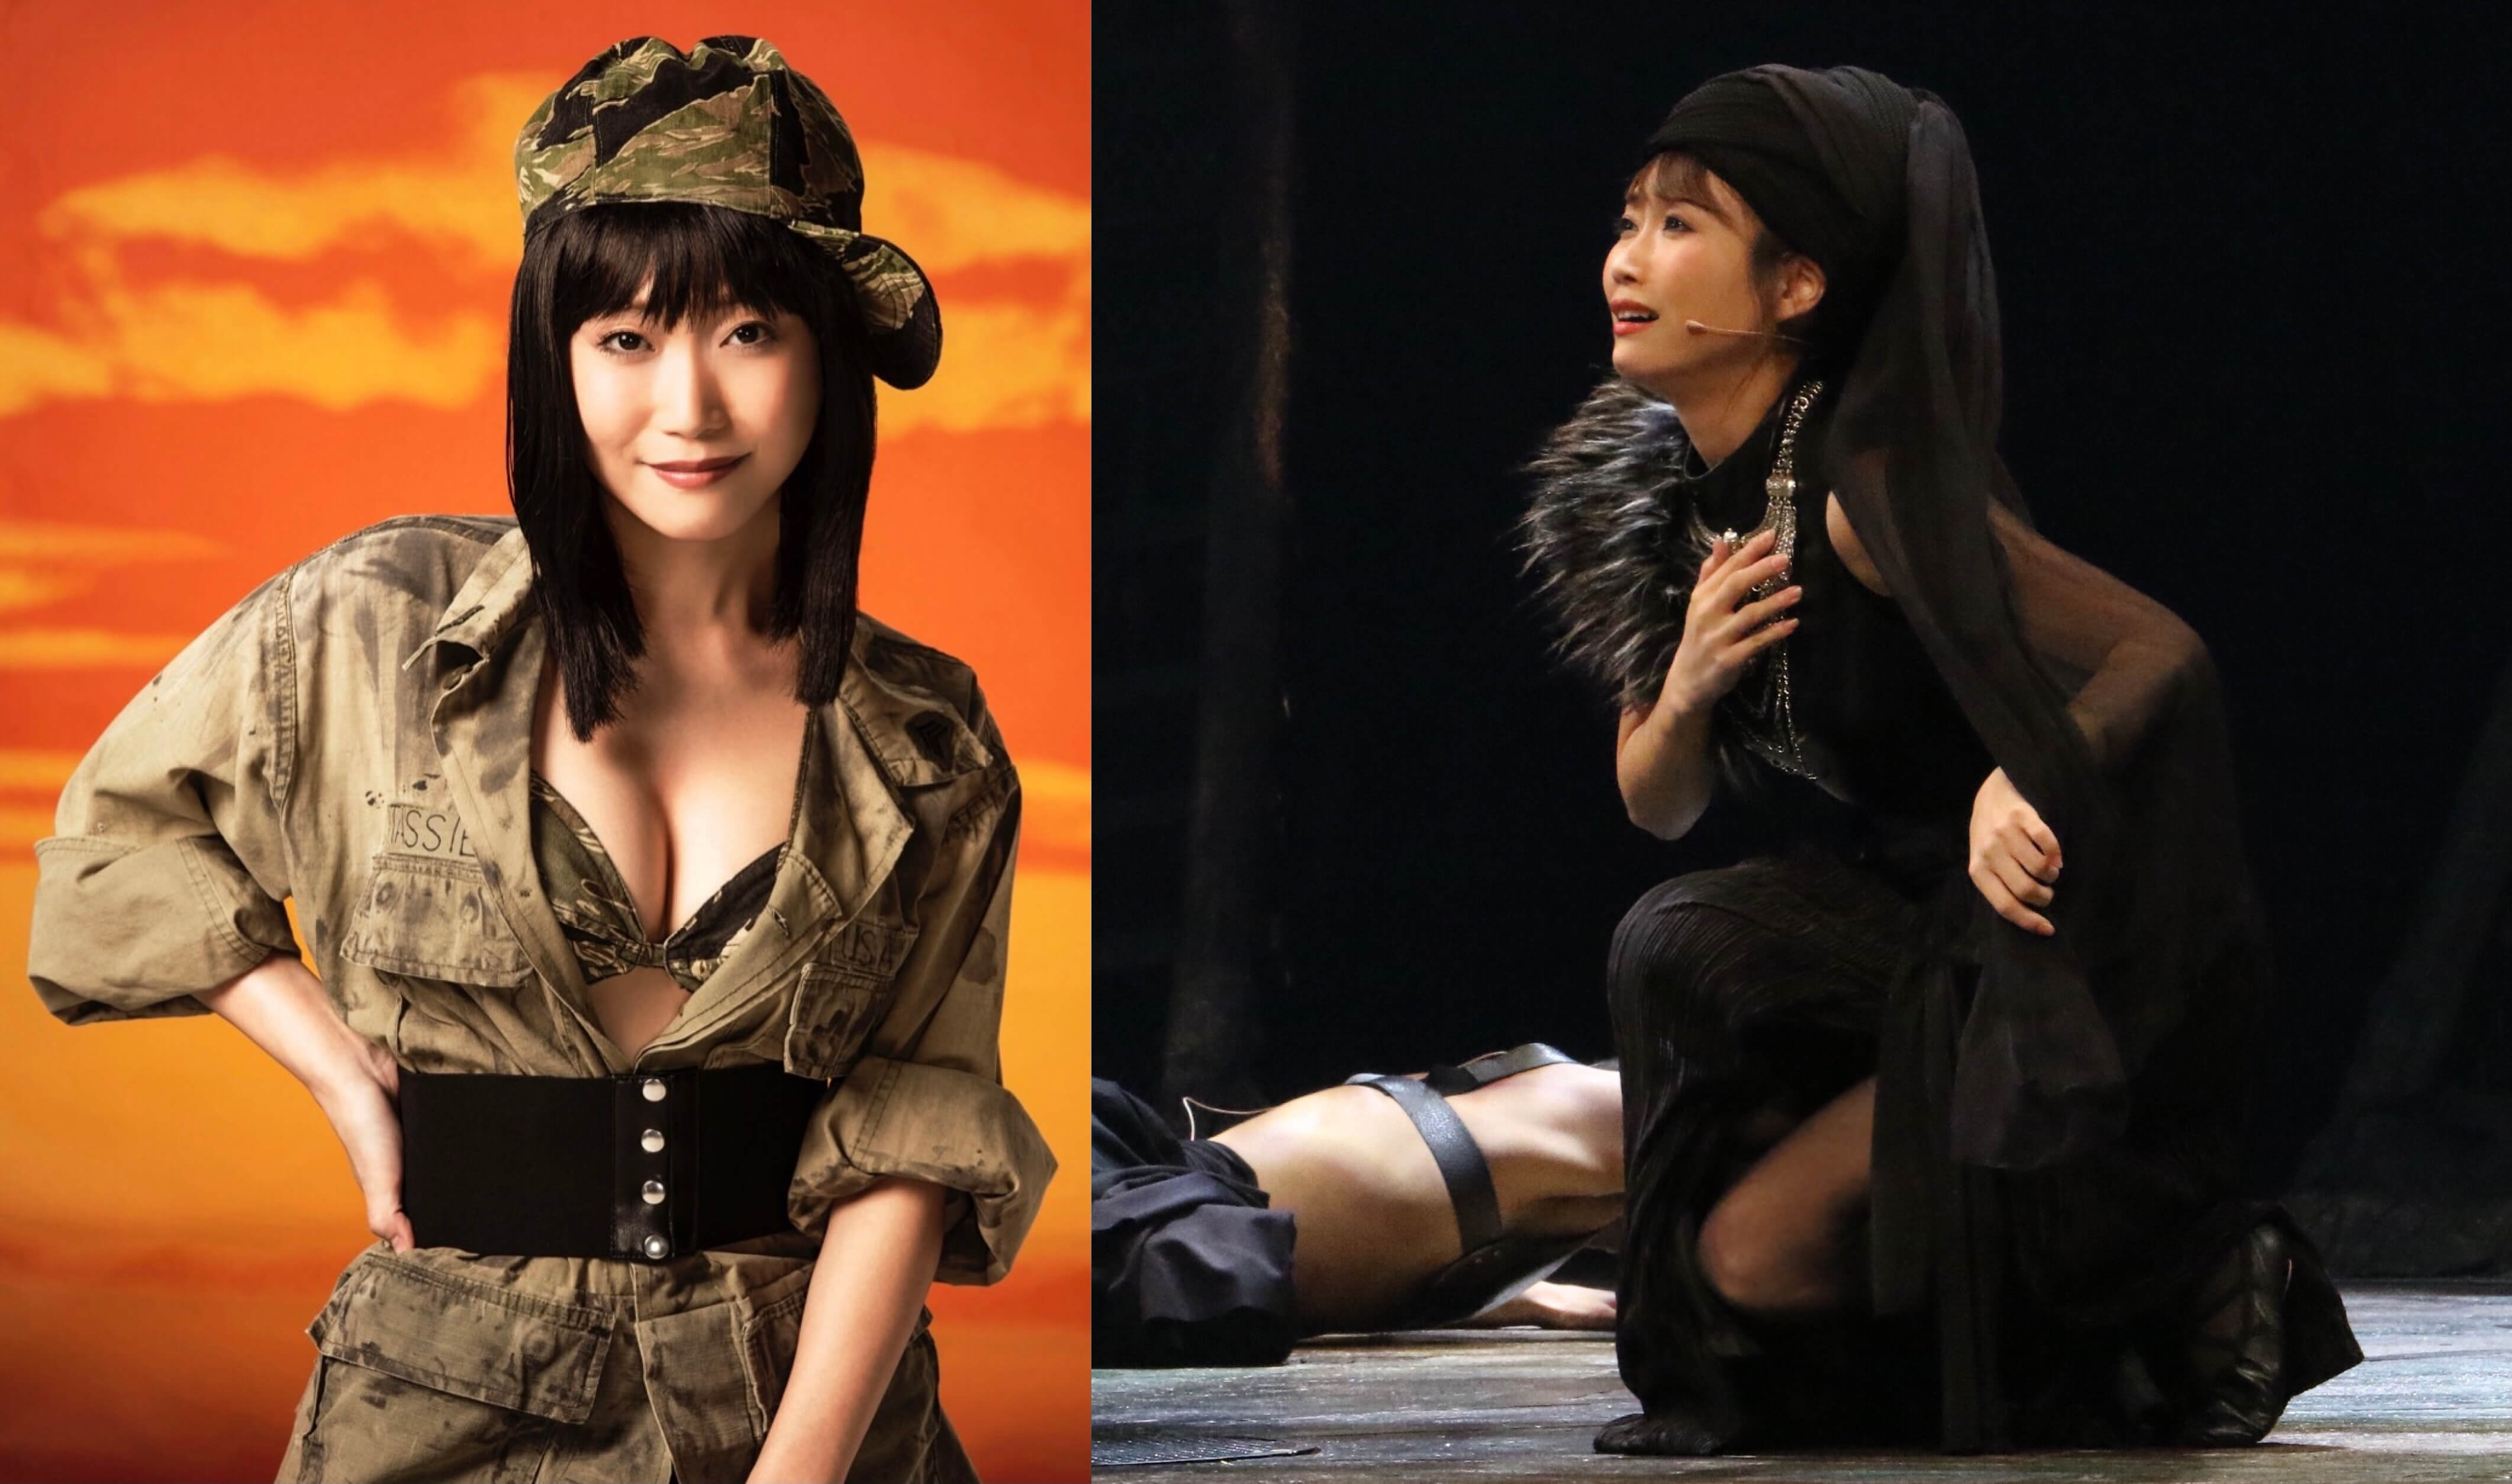 左:「ミス・サイゴン」ジジ役の画像 右:帝国劇場『ナイツ・テイル』三人の王妃役の画像